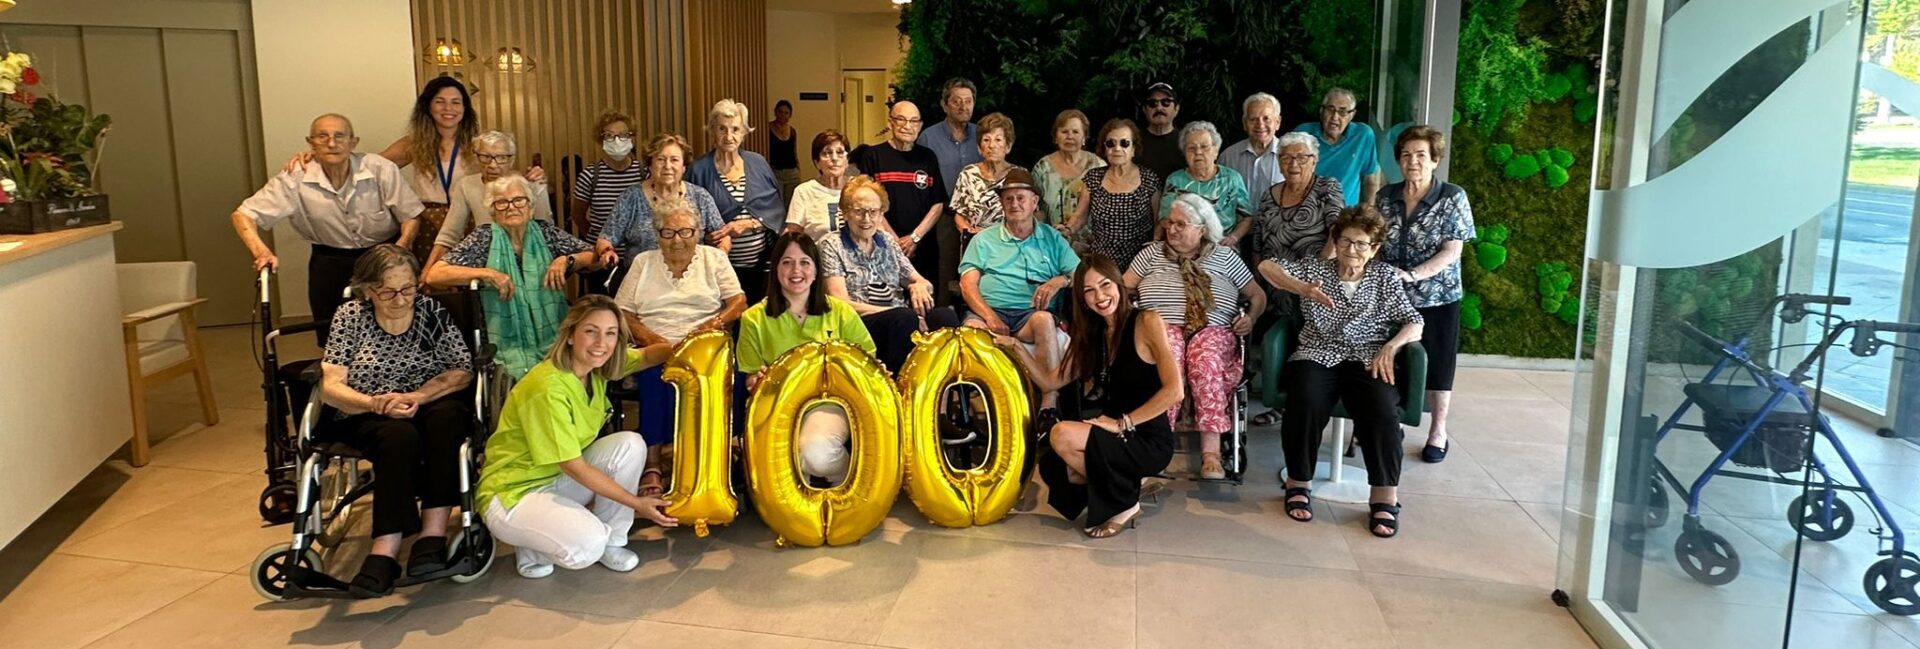 Celebramos un hito: 100 residentes en Centro Casaverde Elche en tiempo récord